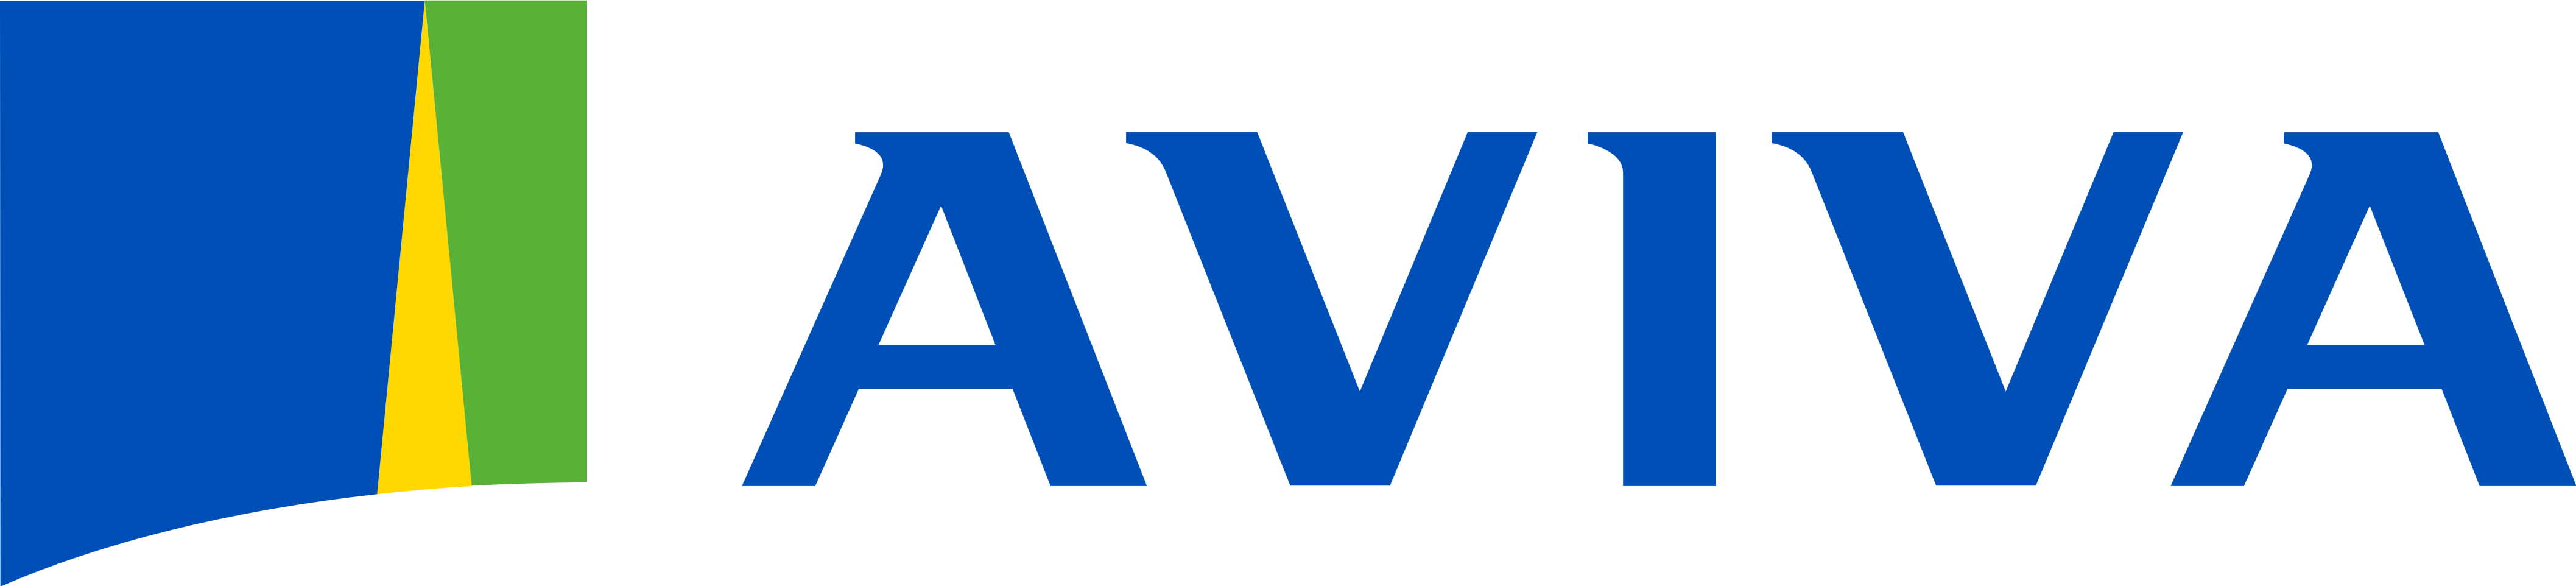 Aviva Logos Download